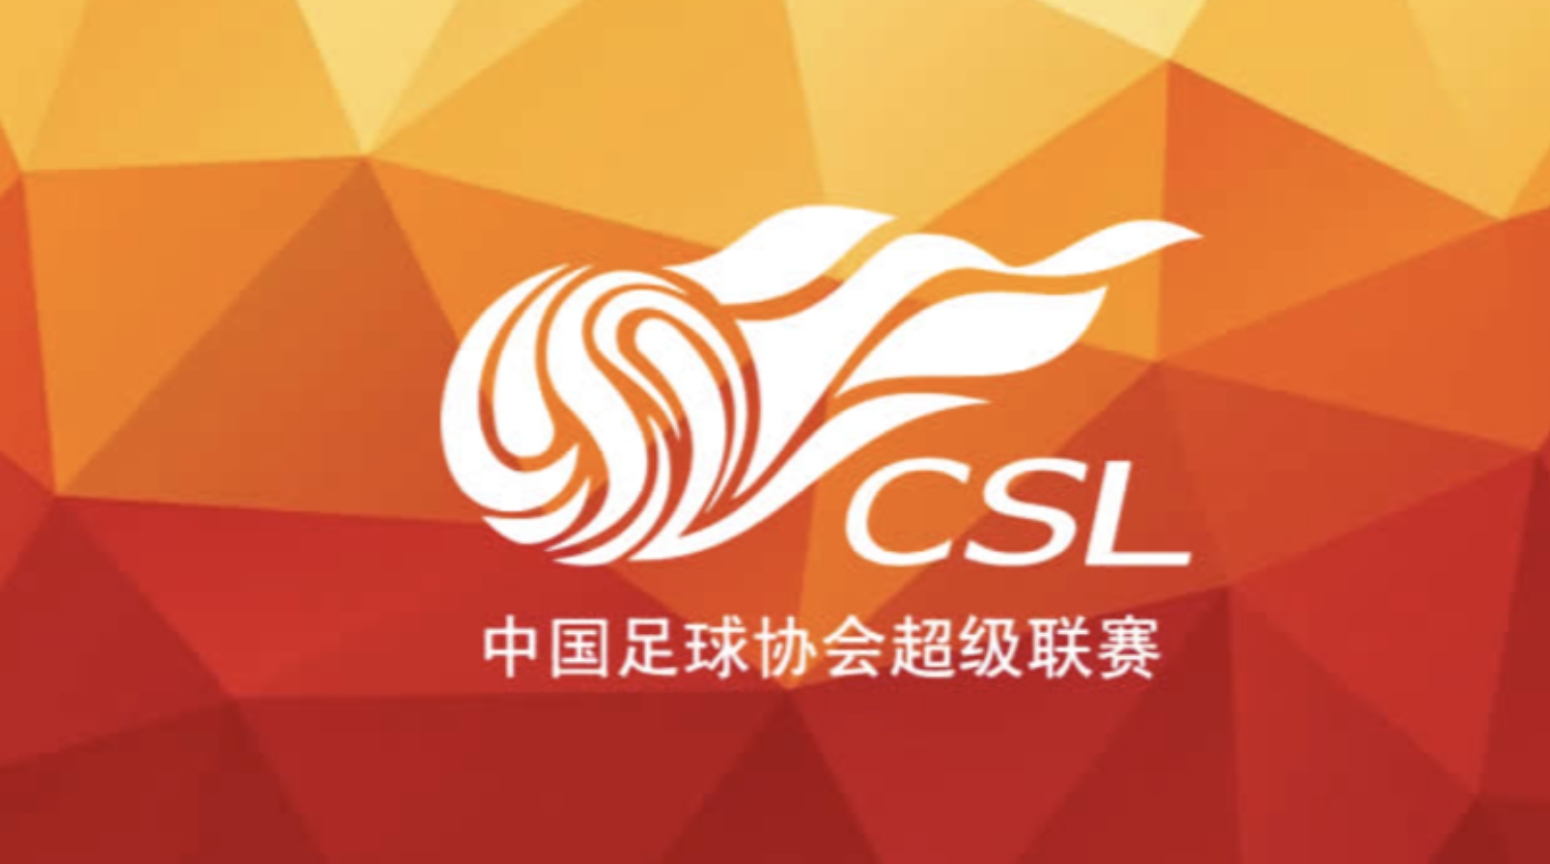 Най успешният китайски футболен клуб Гуанджоу Евъргранде сменя името си преди